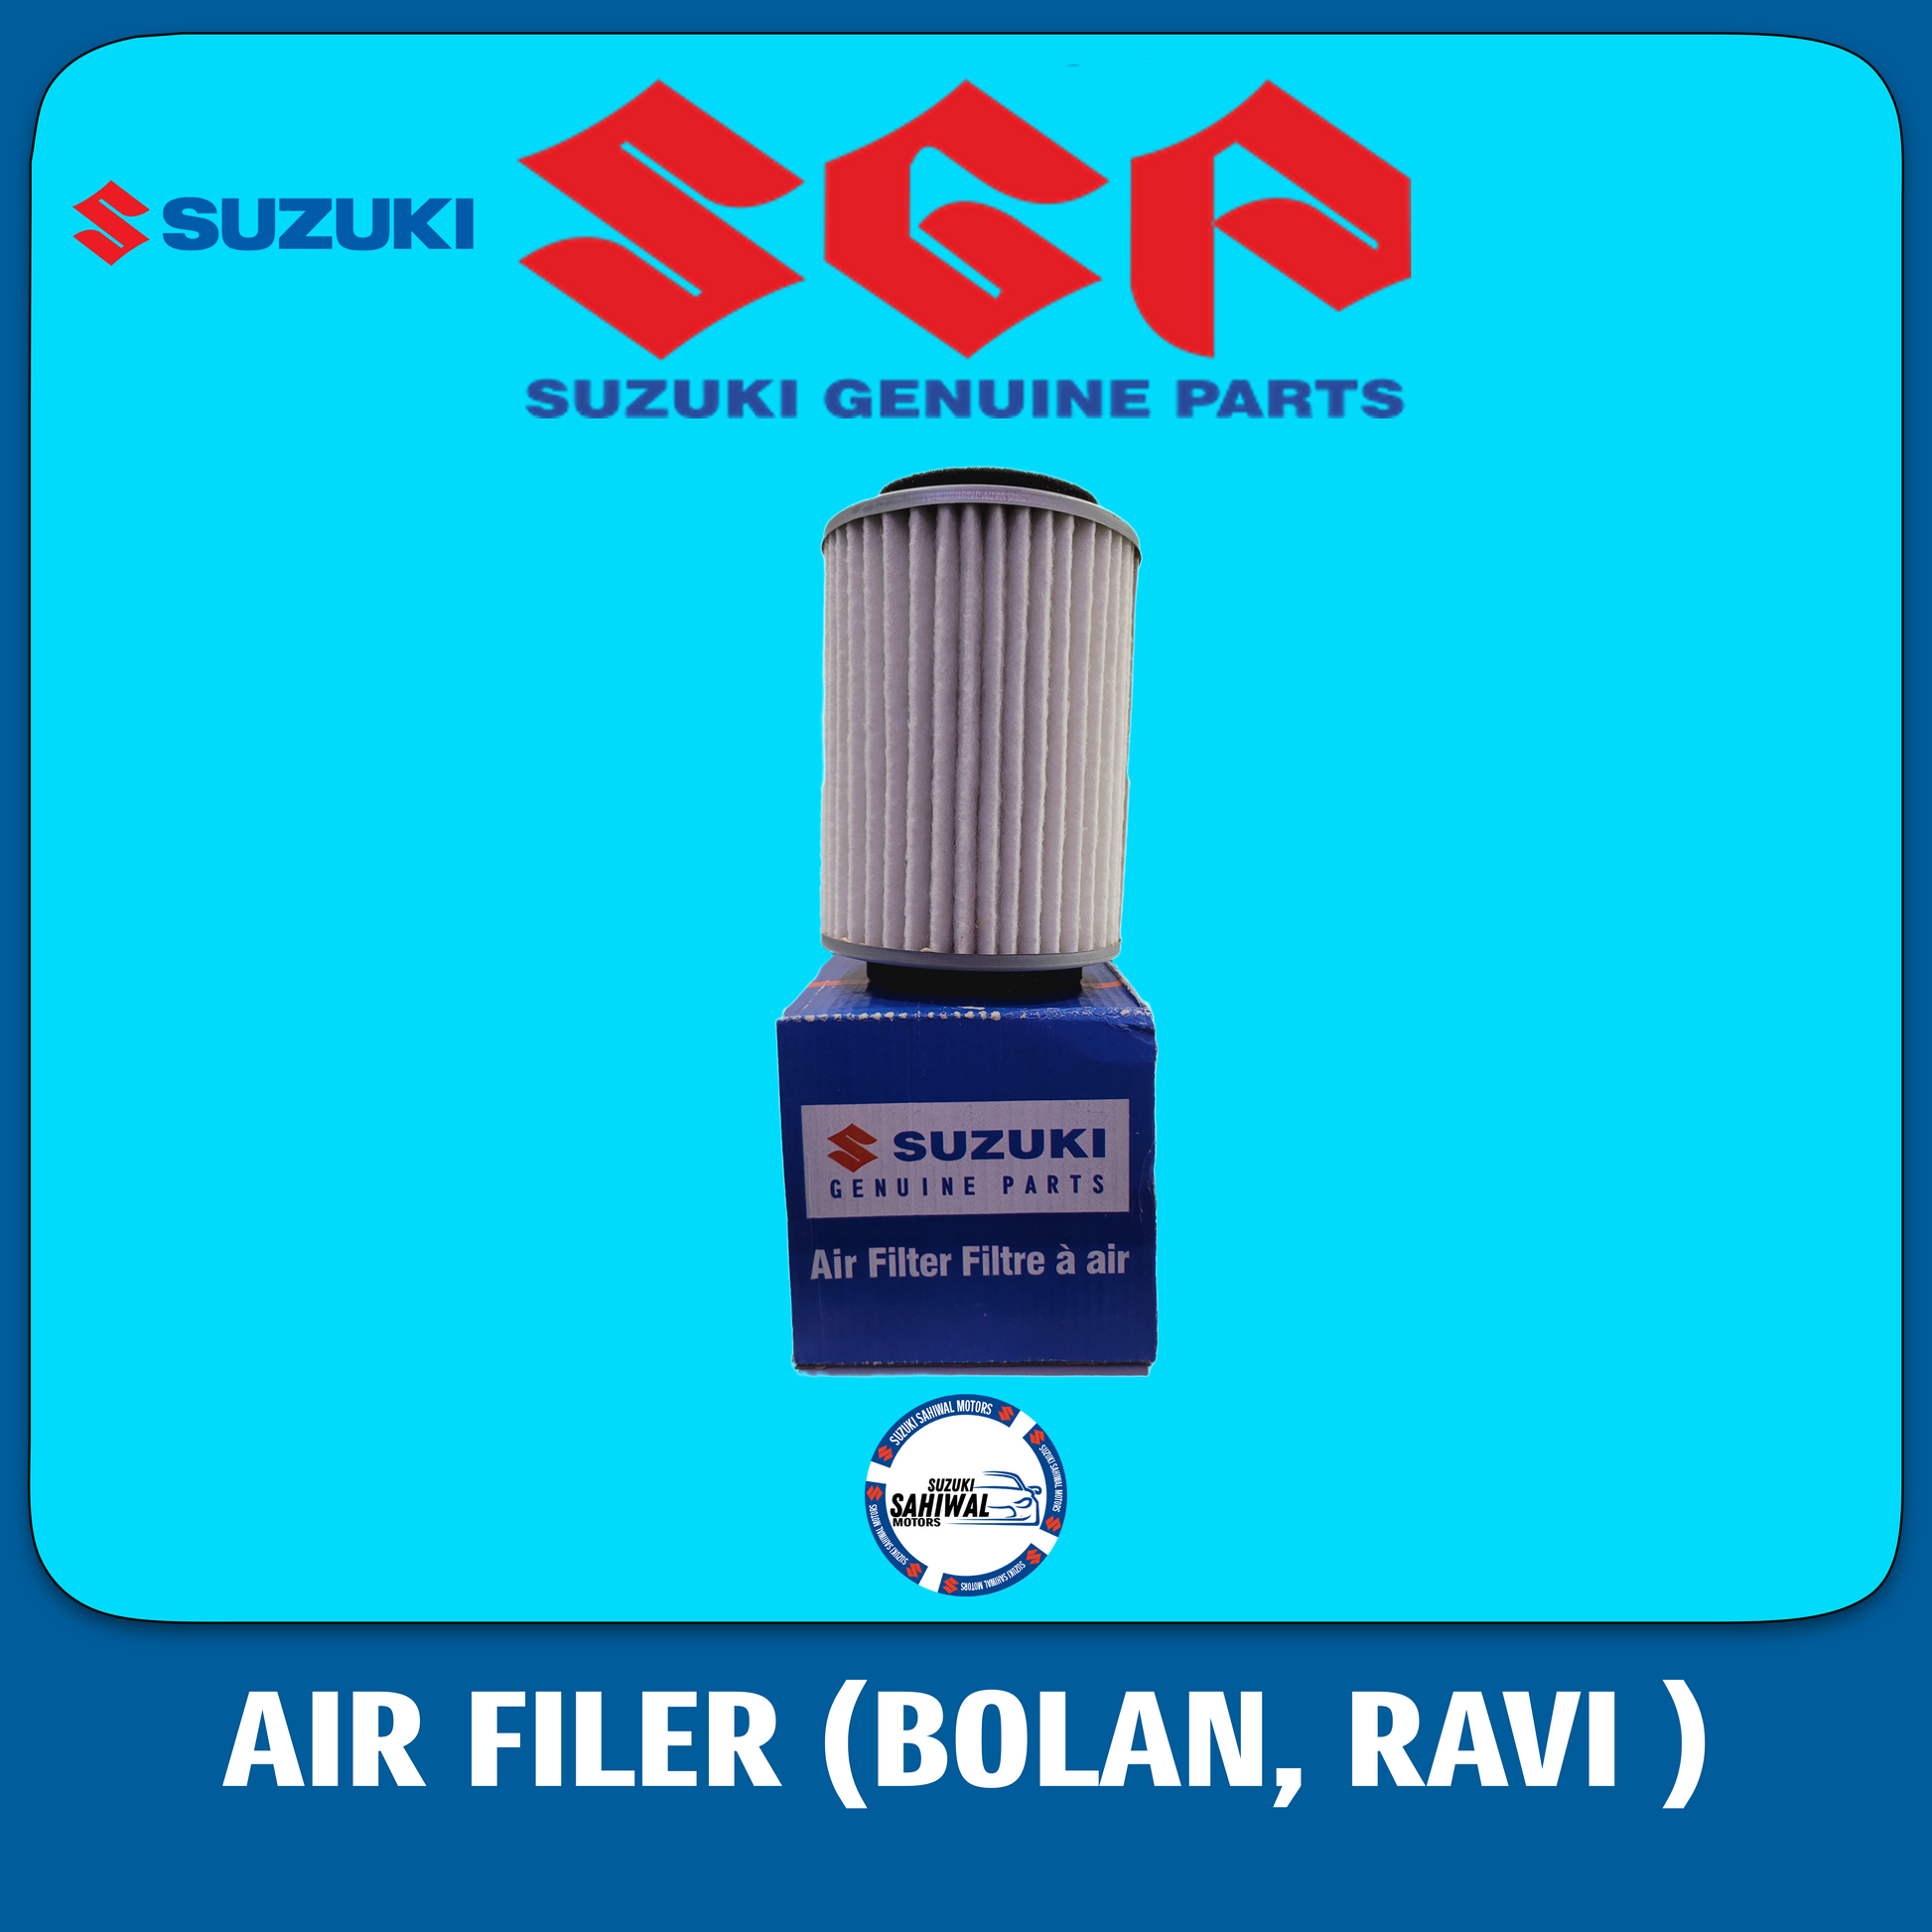 SUZUKI AIR FILTER BOLAN AND RAVI - Suzuki Parts